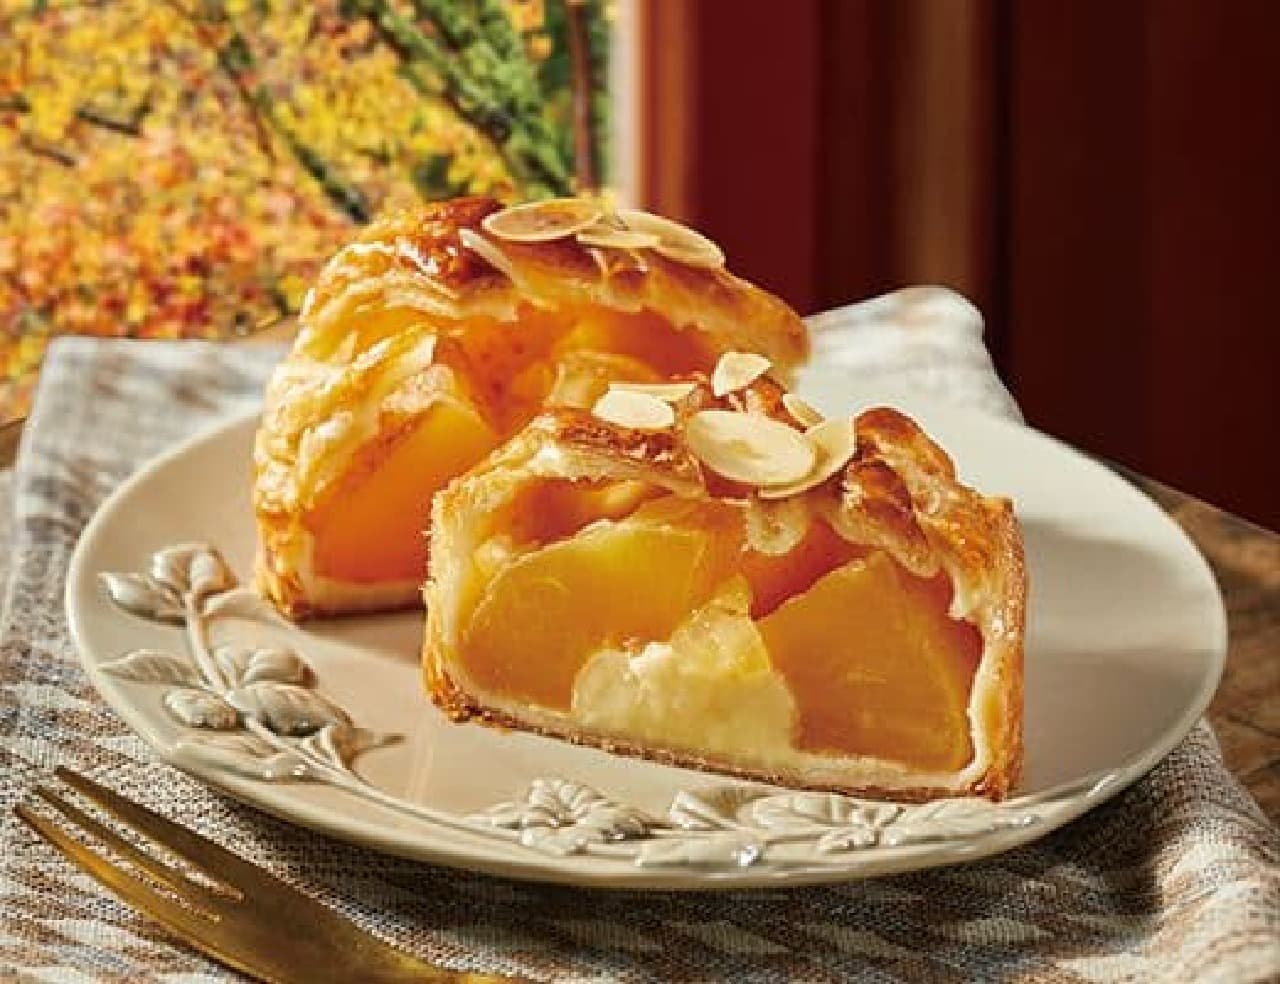 Lawson "Uchi Cafe Specialite Sunshine Apple Pie Autumn"